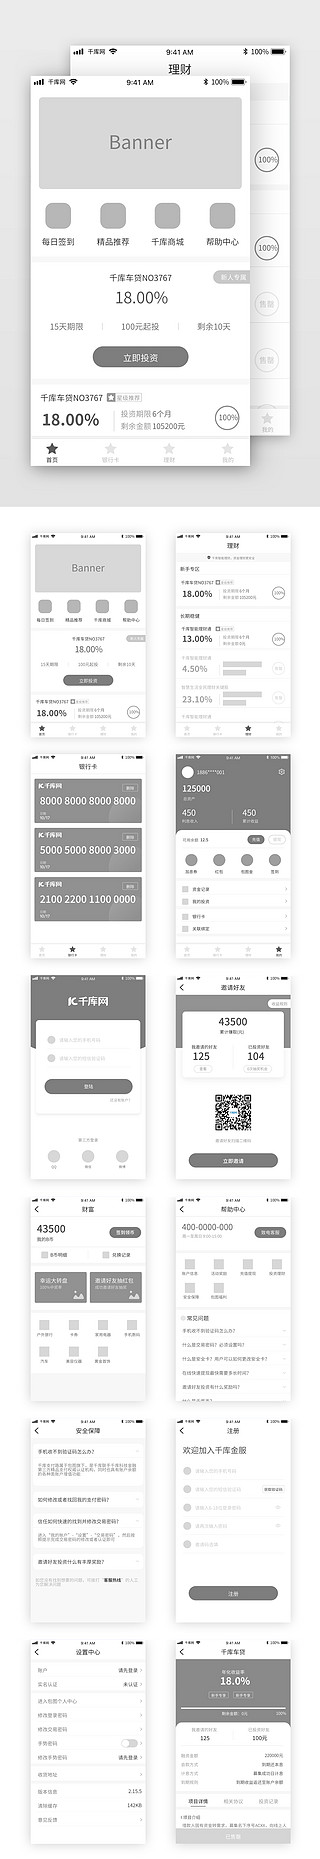 农产品主图排版芒果UI设计素材_车贷金服排版流程原型图